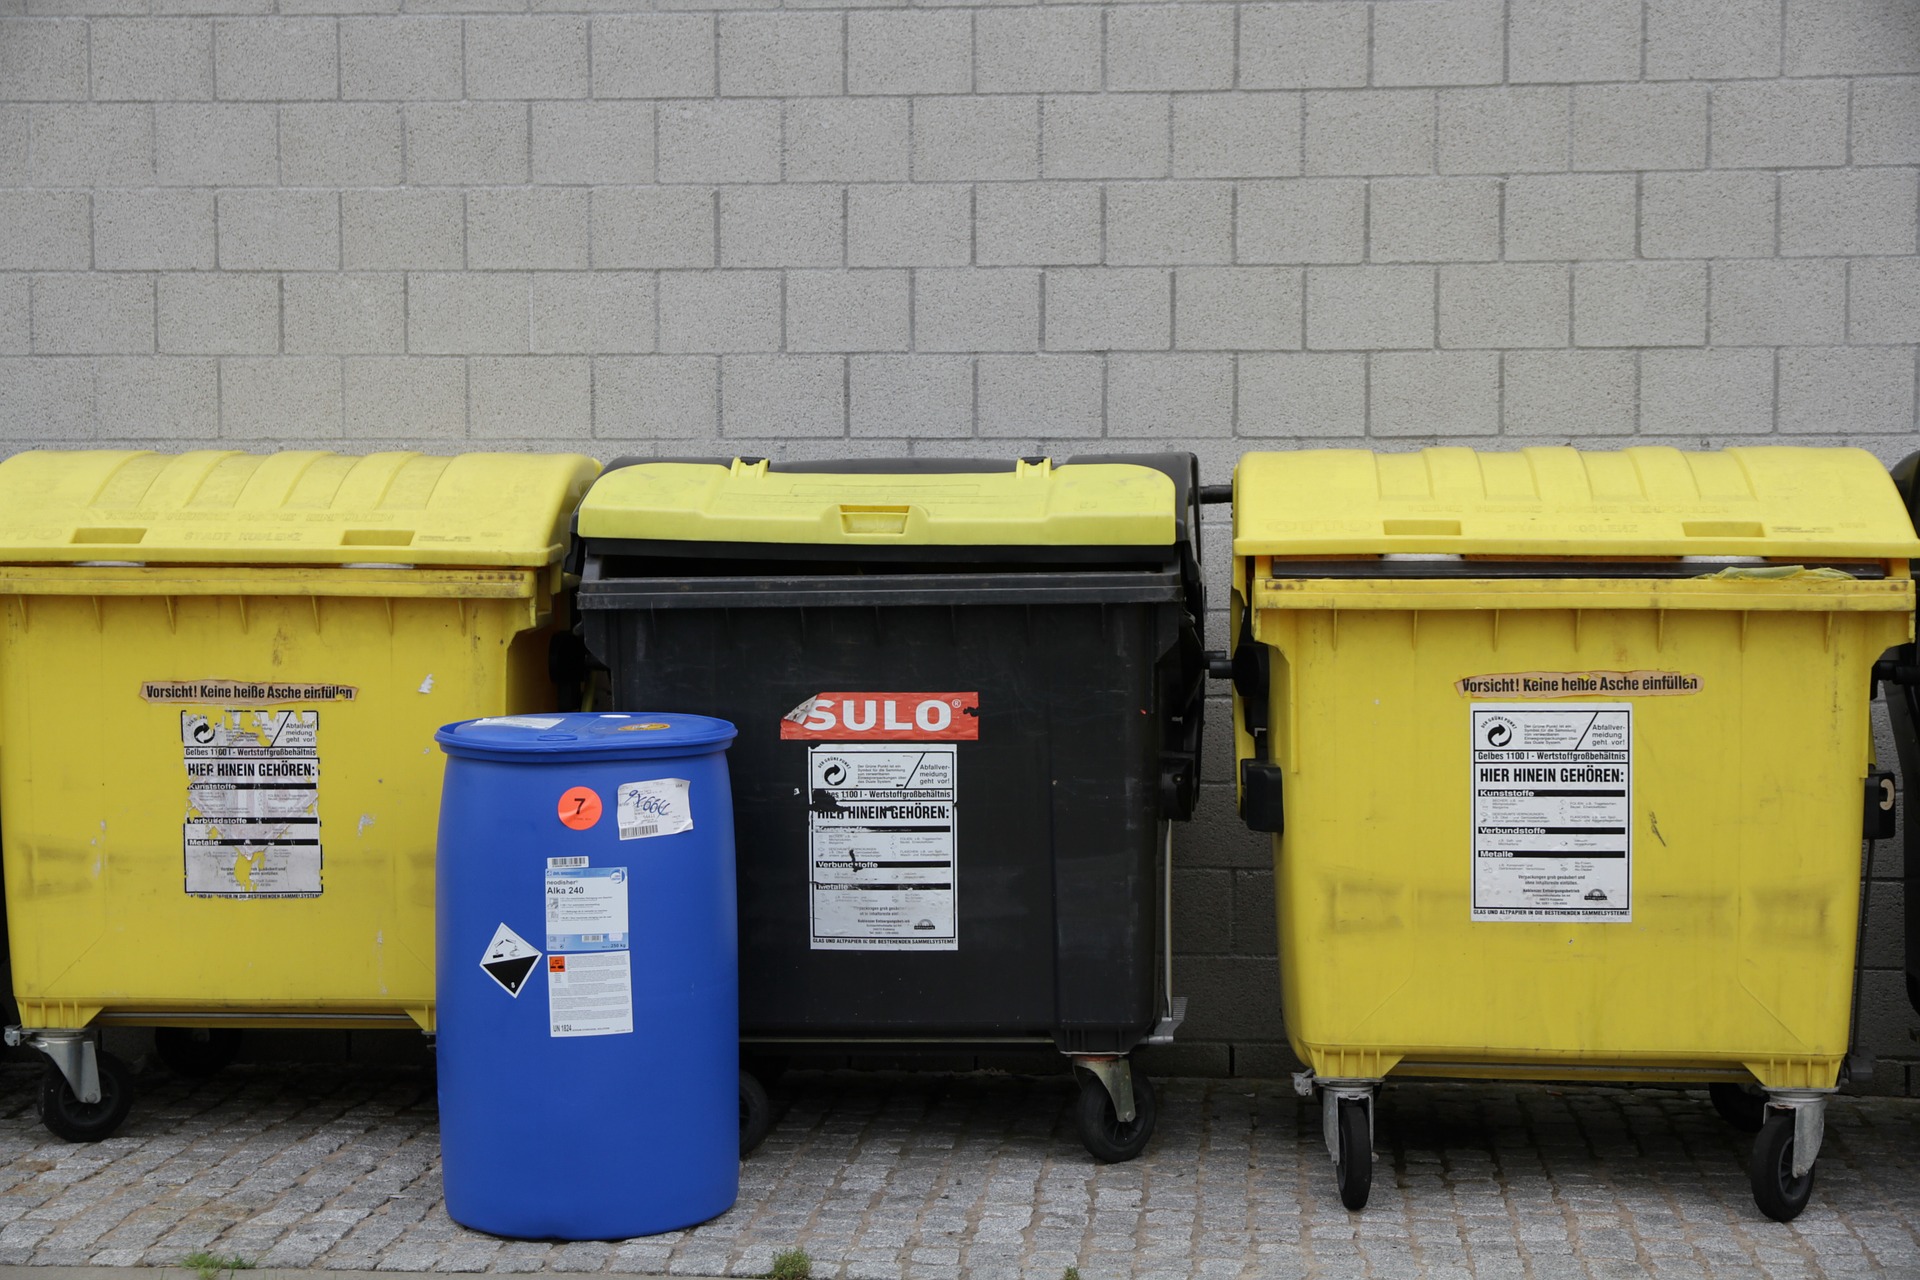 Brakuje ok. 16 tysięcy deklaracji dot. odpadów w Poznaniu. Od nowego roku śmieci nie będą odbierane